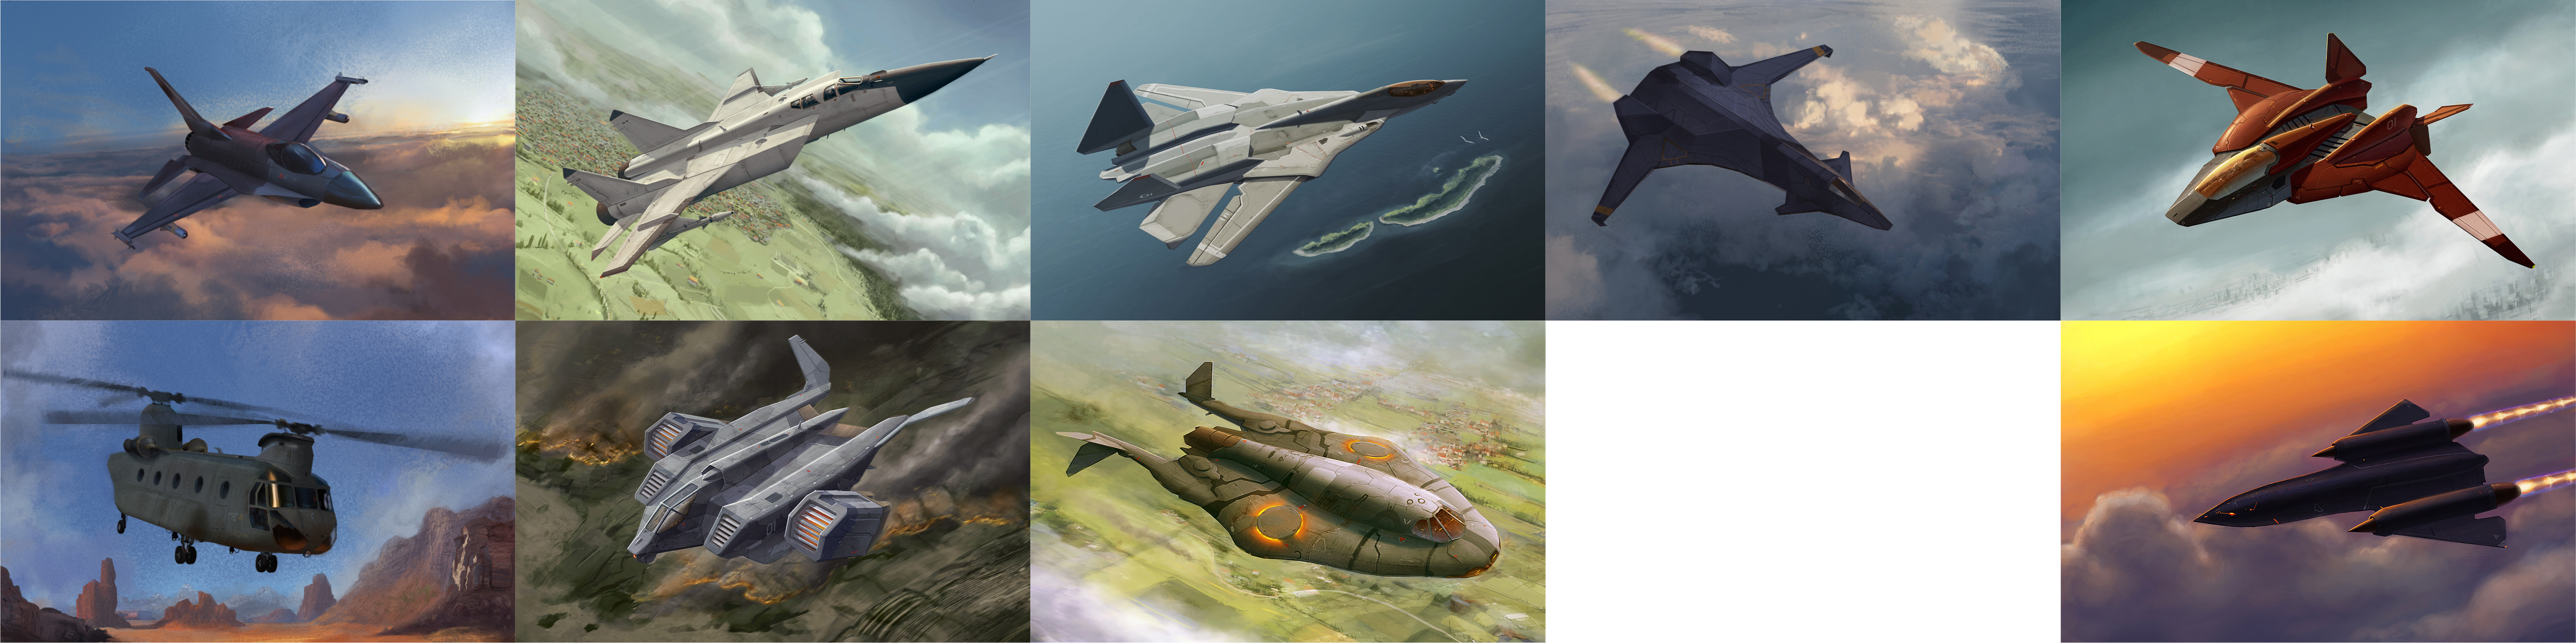 Xenonauts - Aircrafts